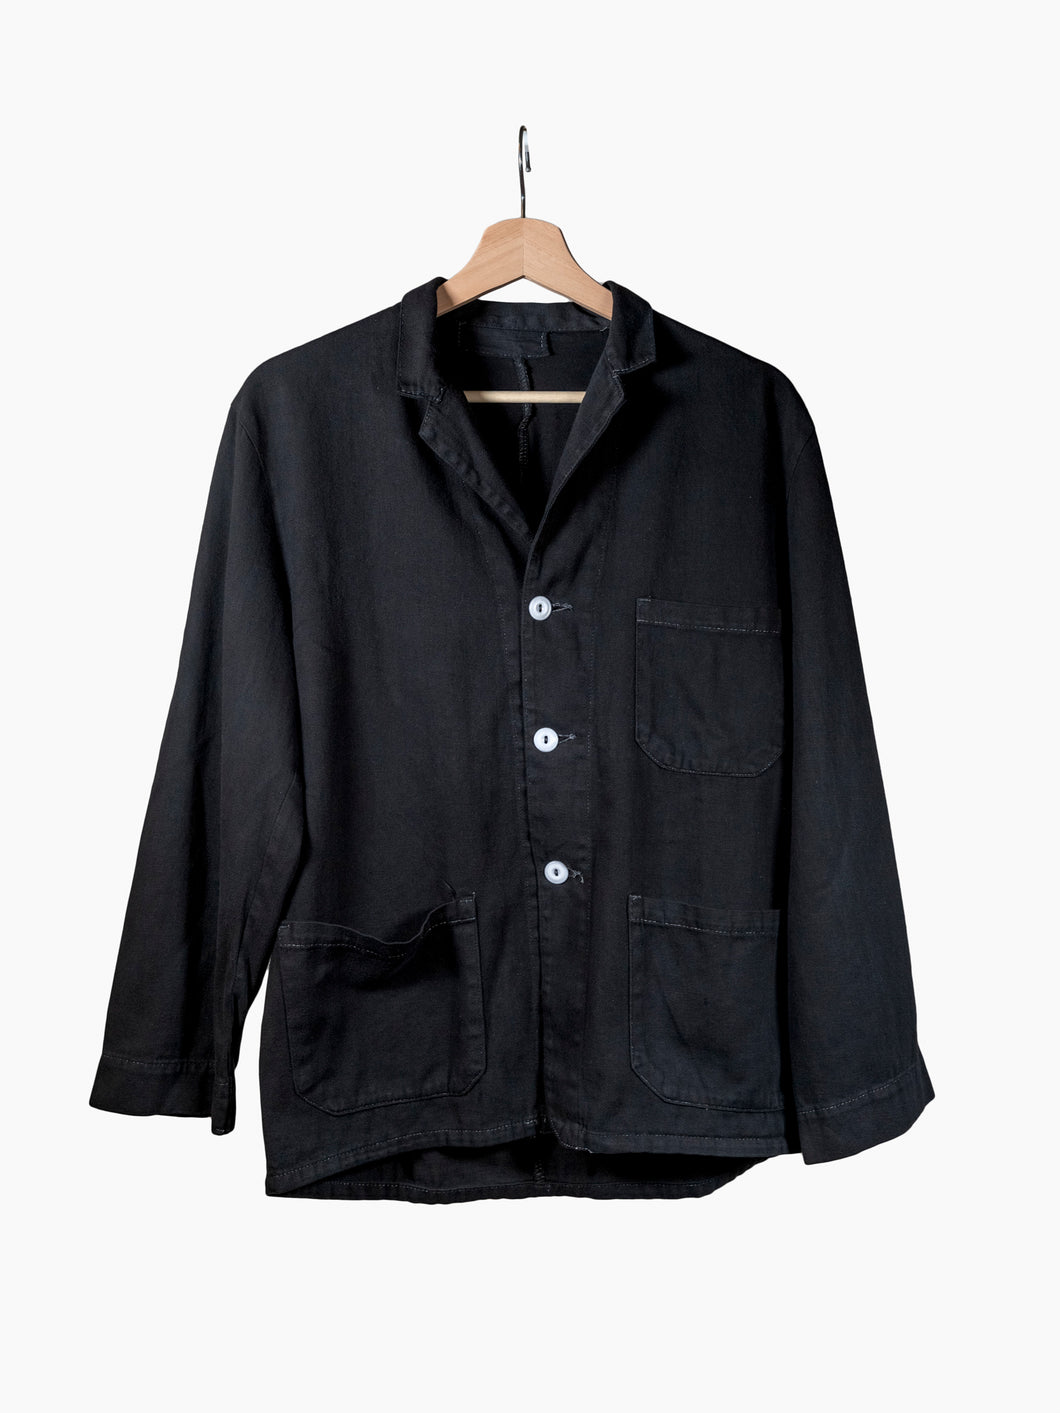 Vintage Black Long Sleeve Loop Collar Shirt